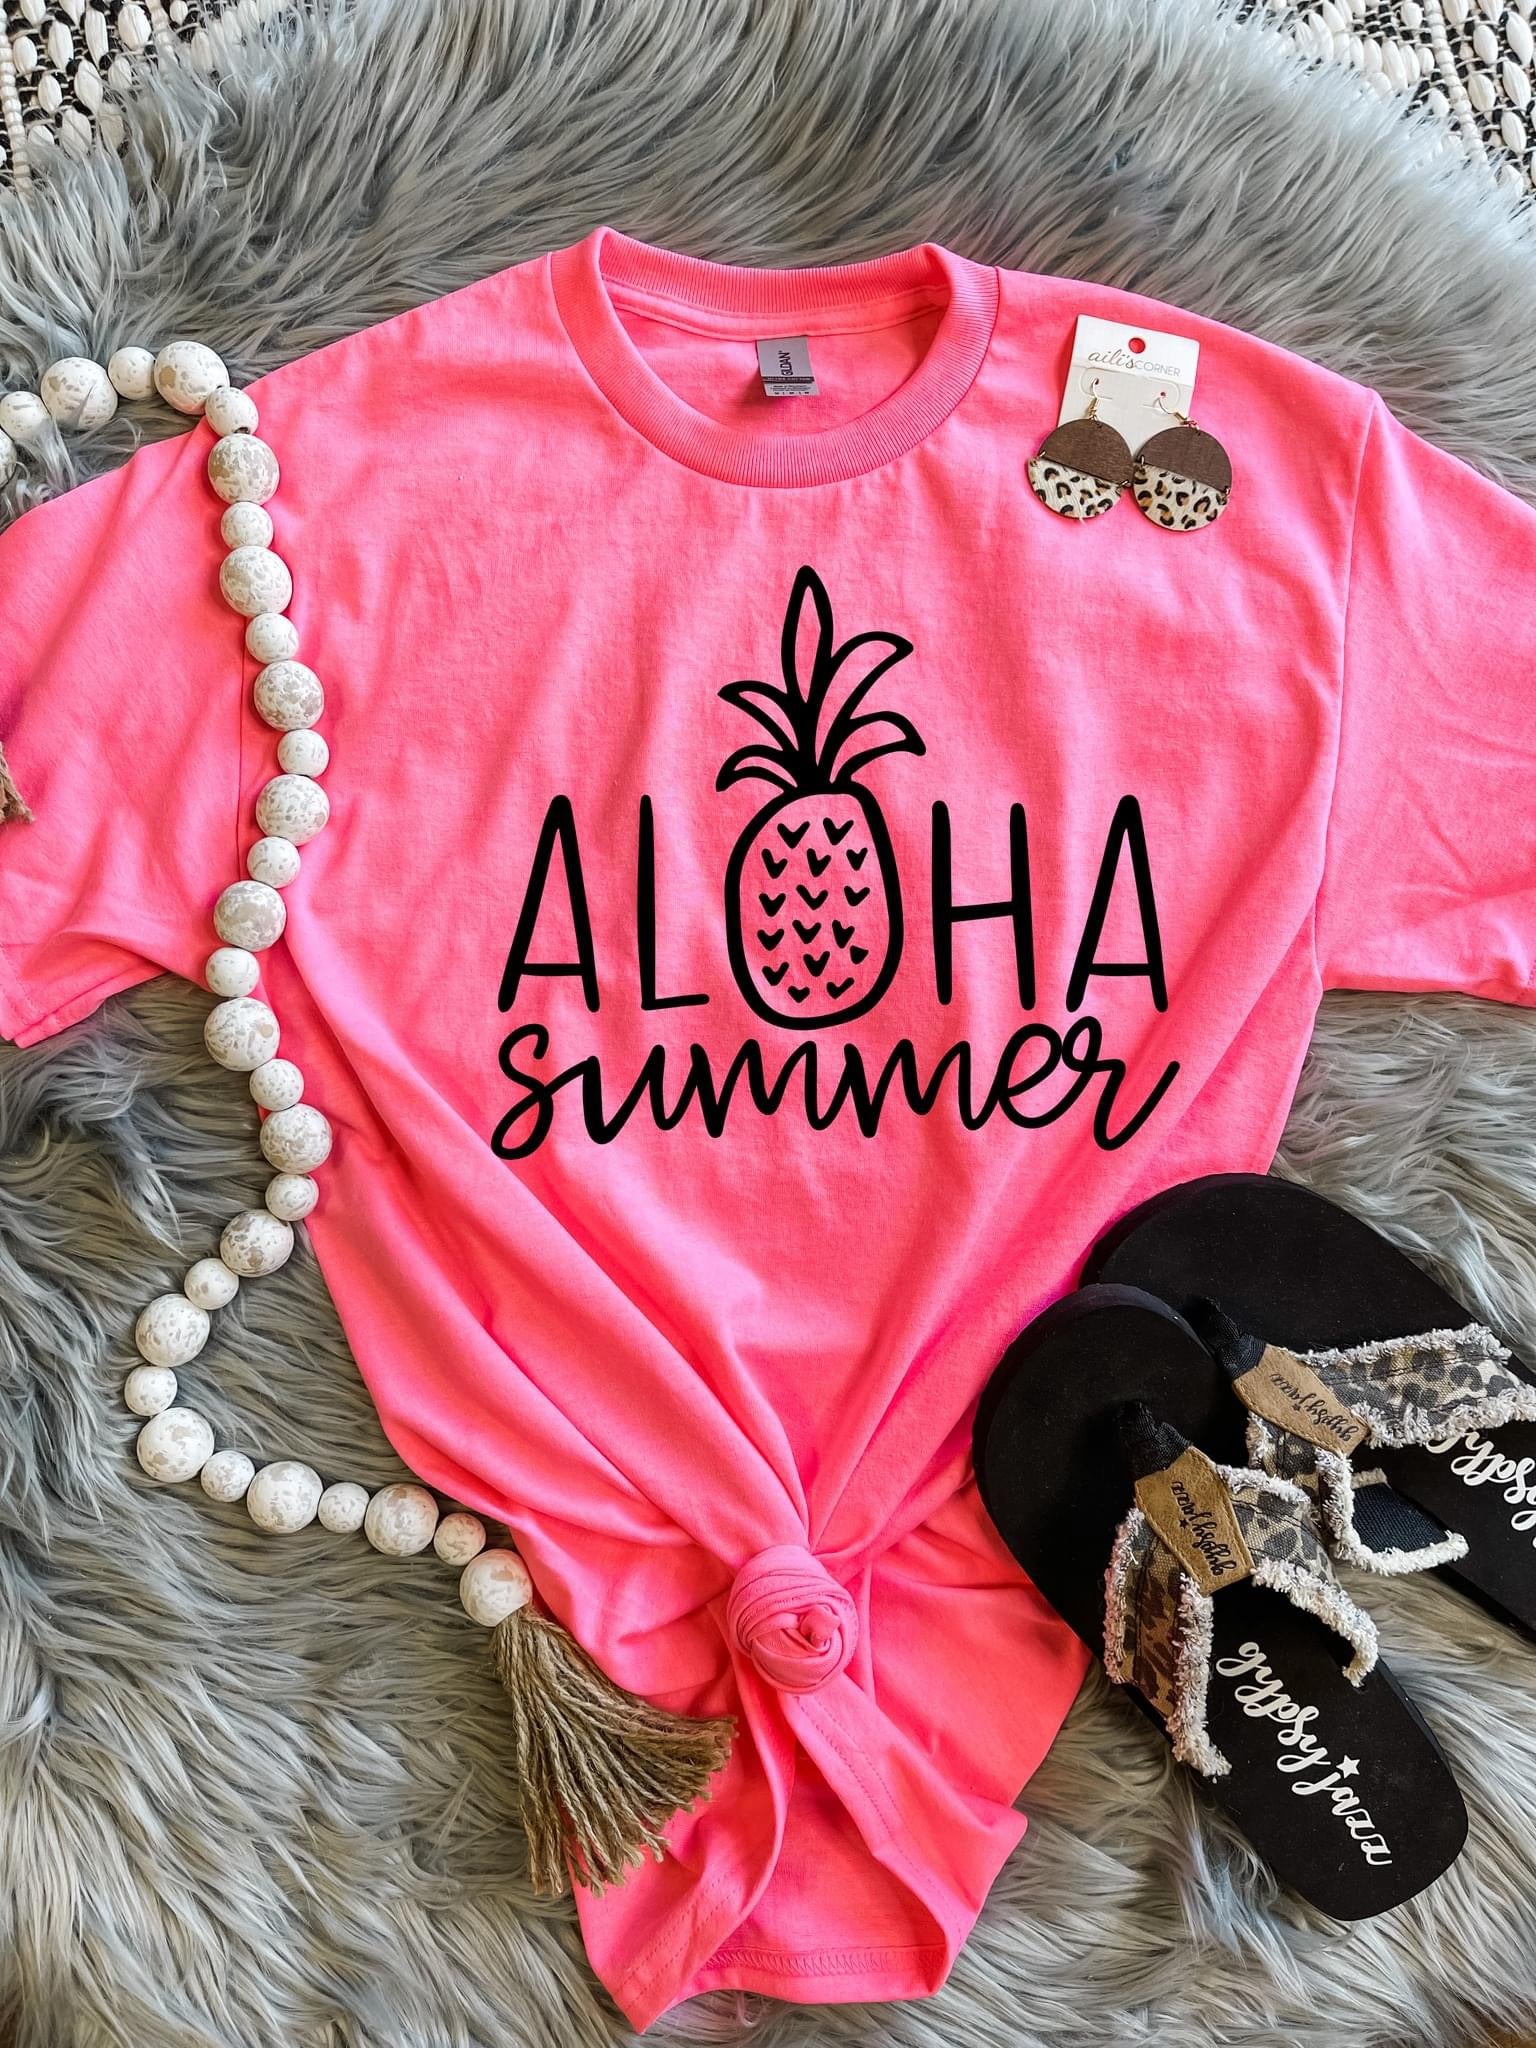 Aloha Summer Hot Pink Tee